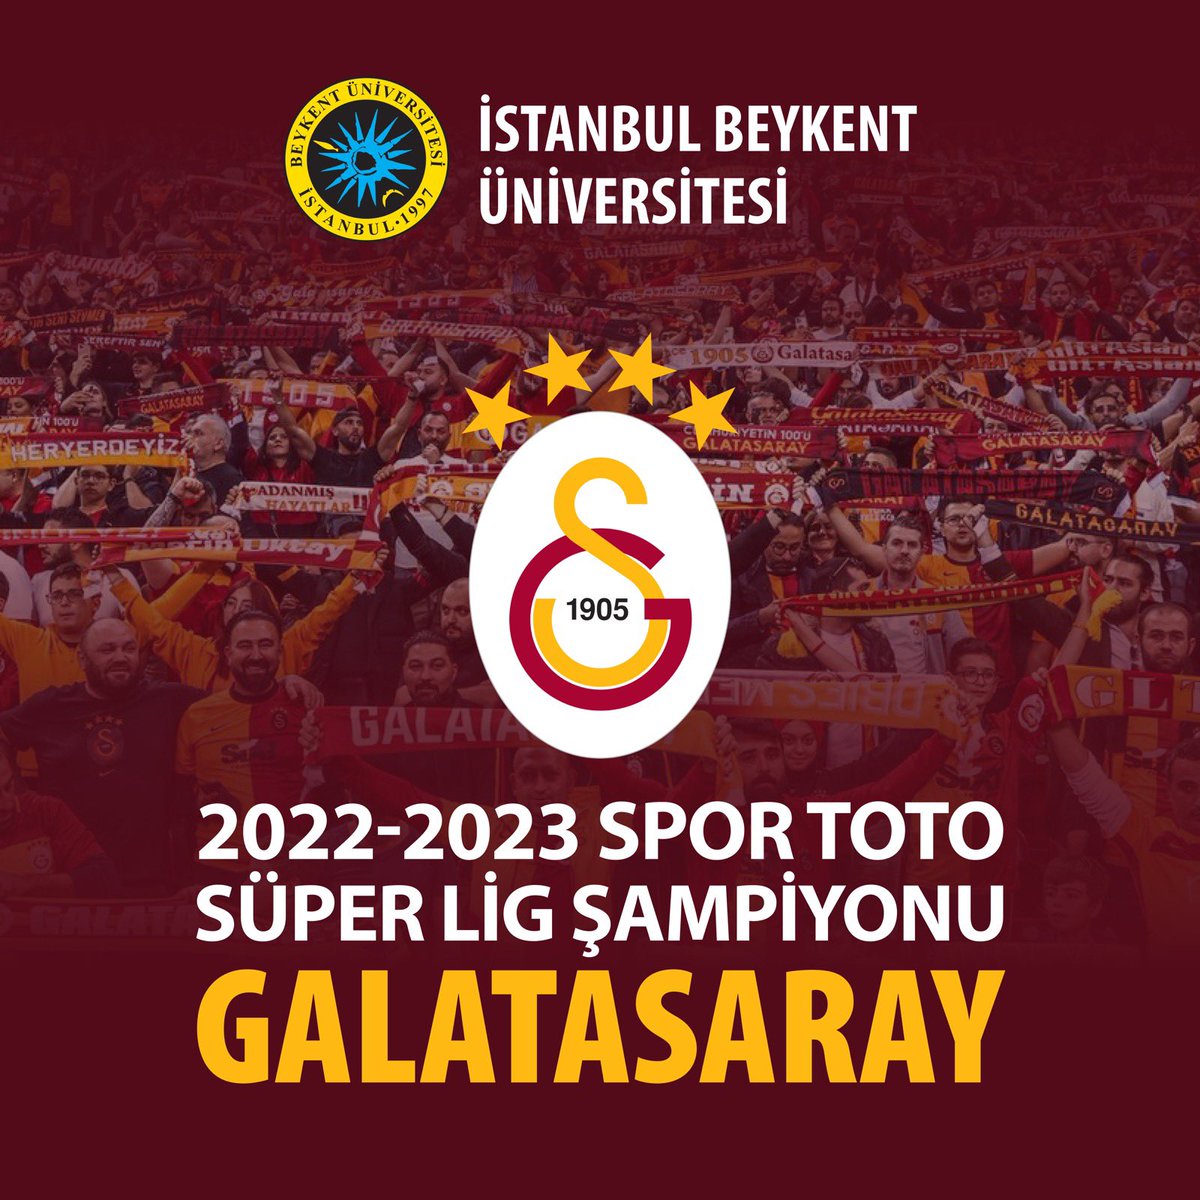 2022-2023 Spor Toto Süper Lig Şampiyonu Galatasaray’ı Kutlarız!

#İstanbulBeykentÜniversitesi